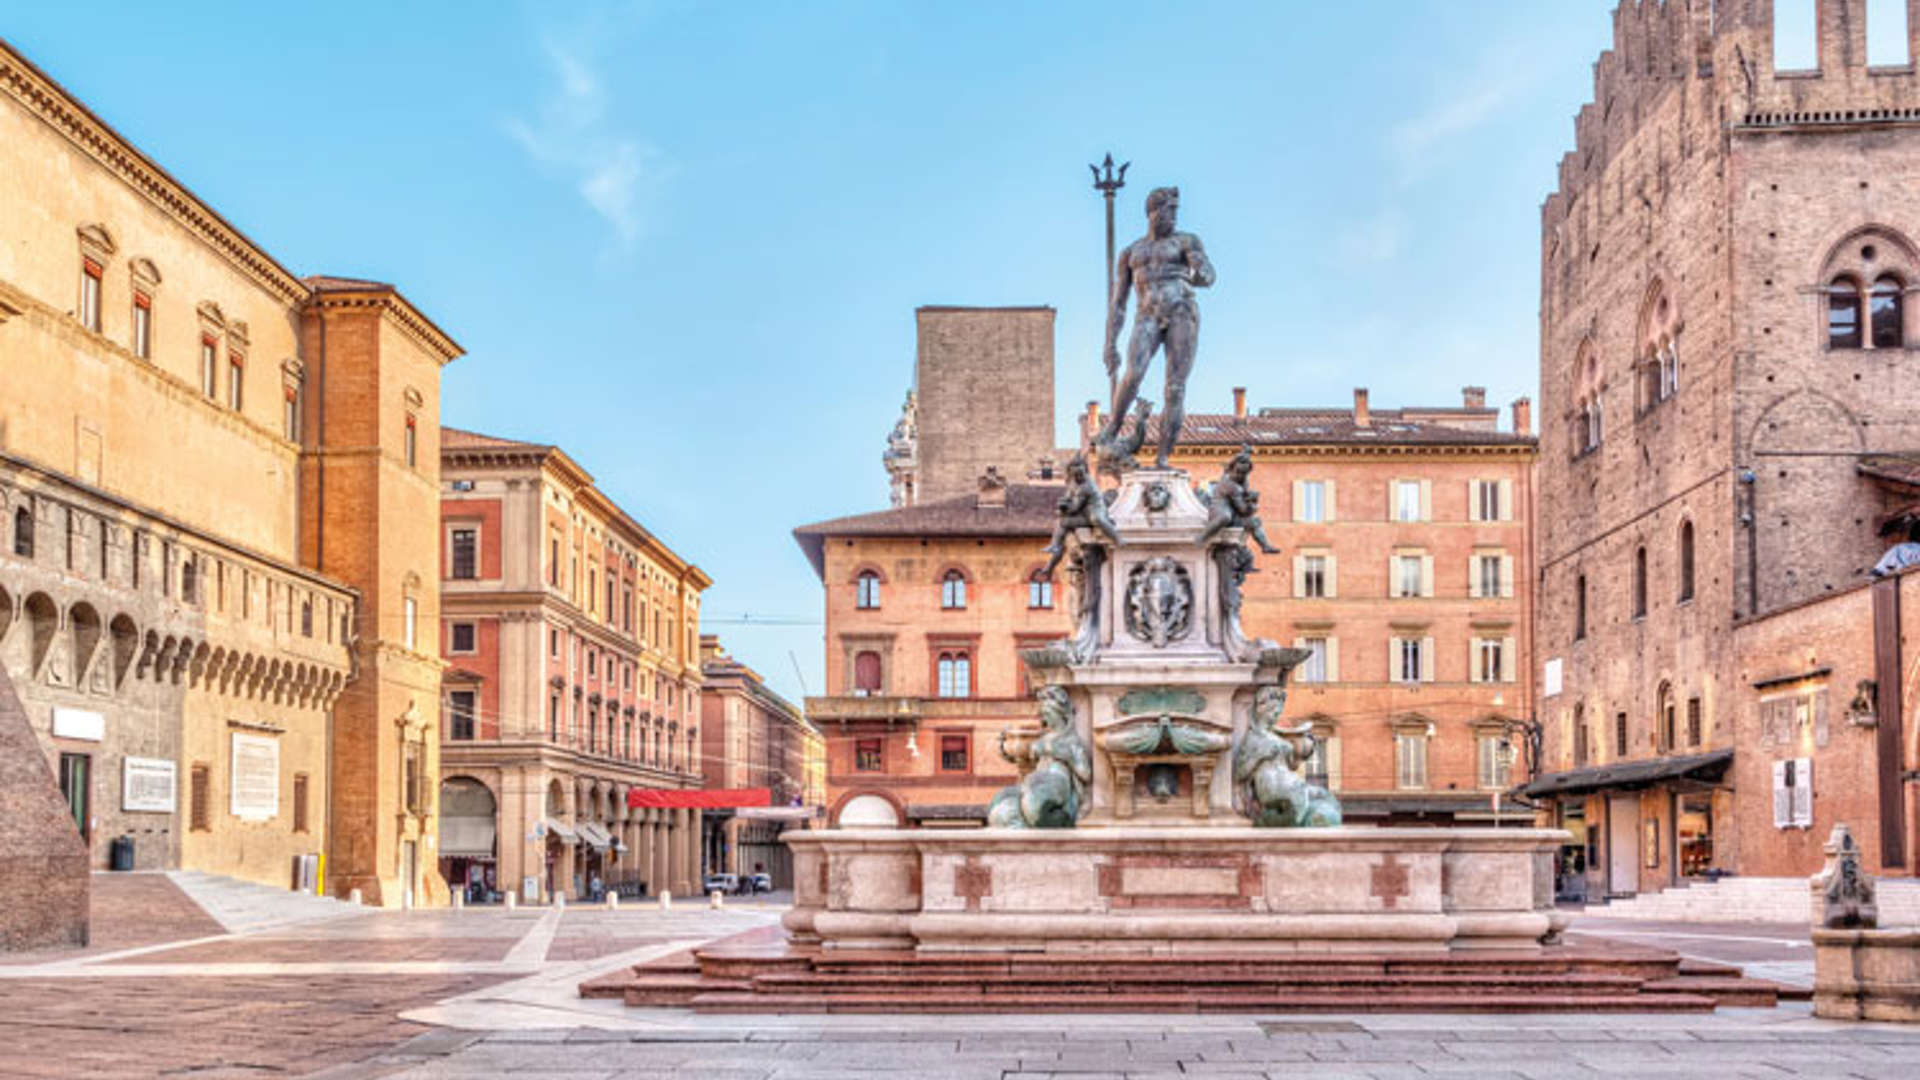 Neptune Statue, Bologna, Italy